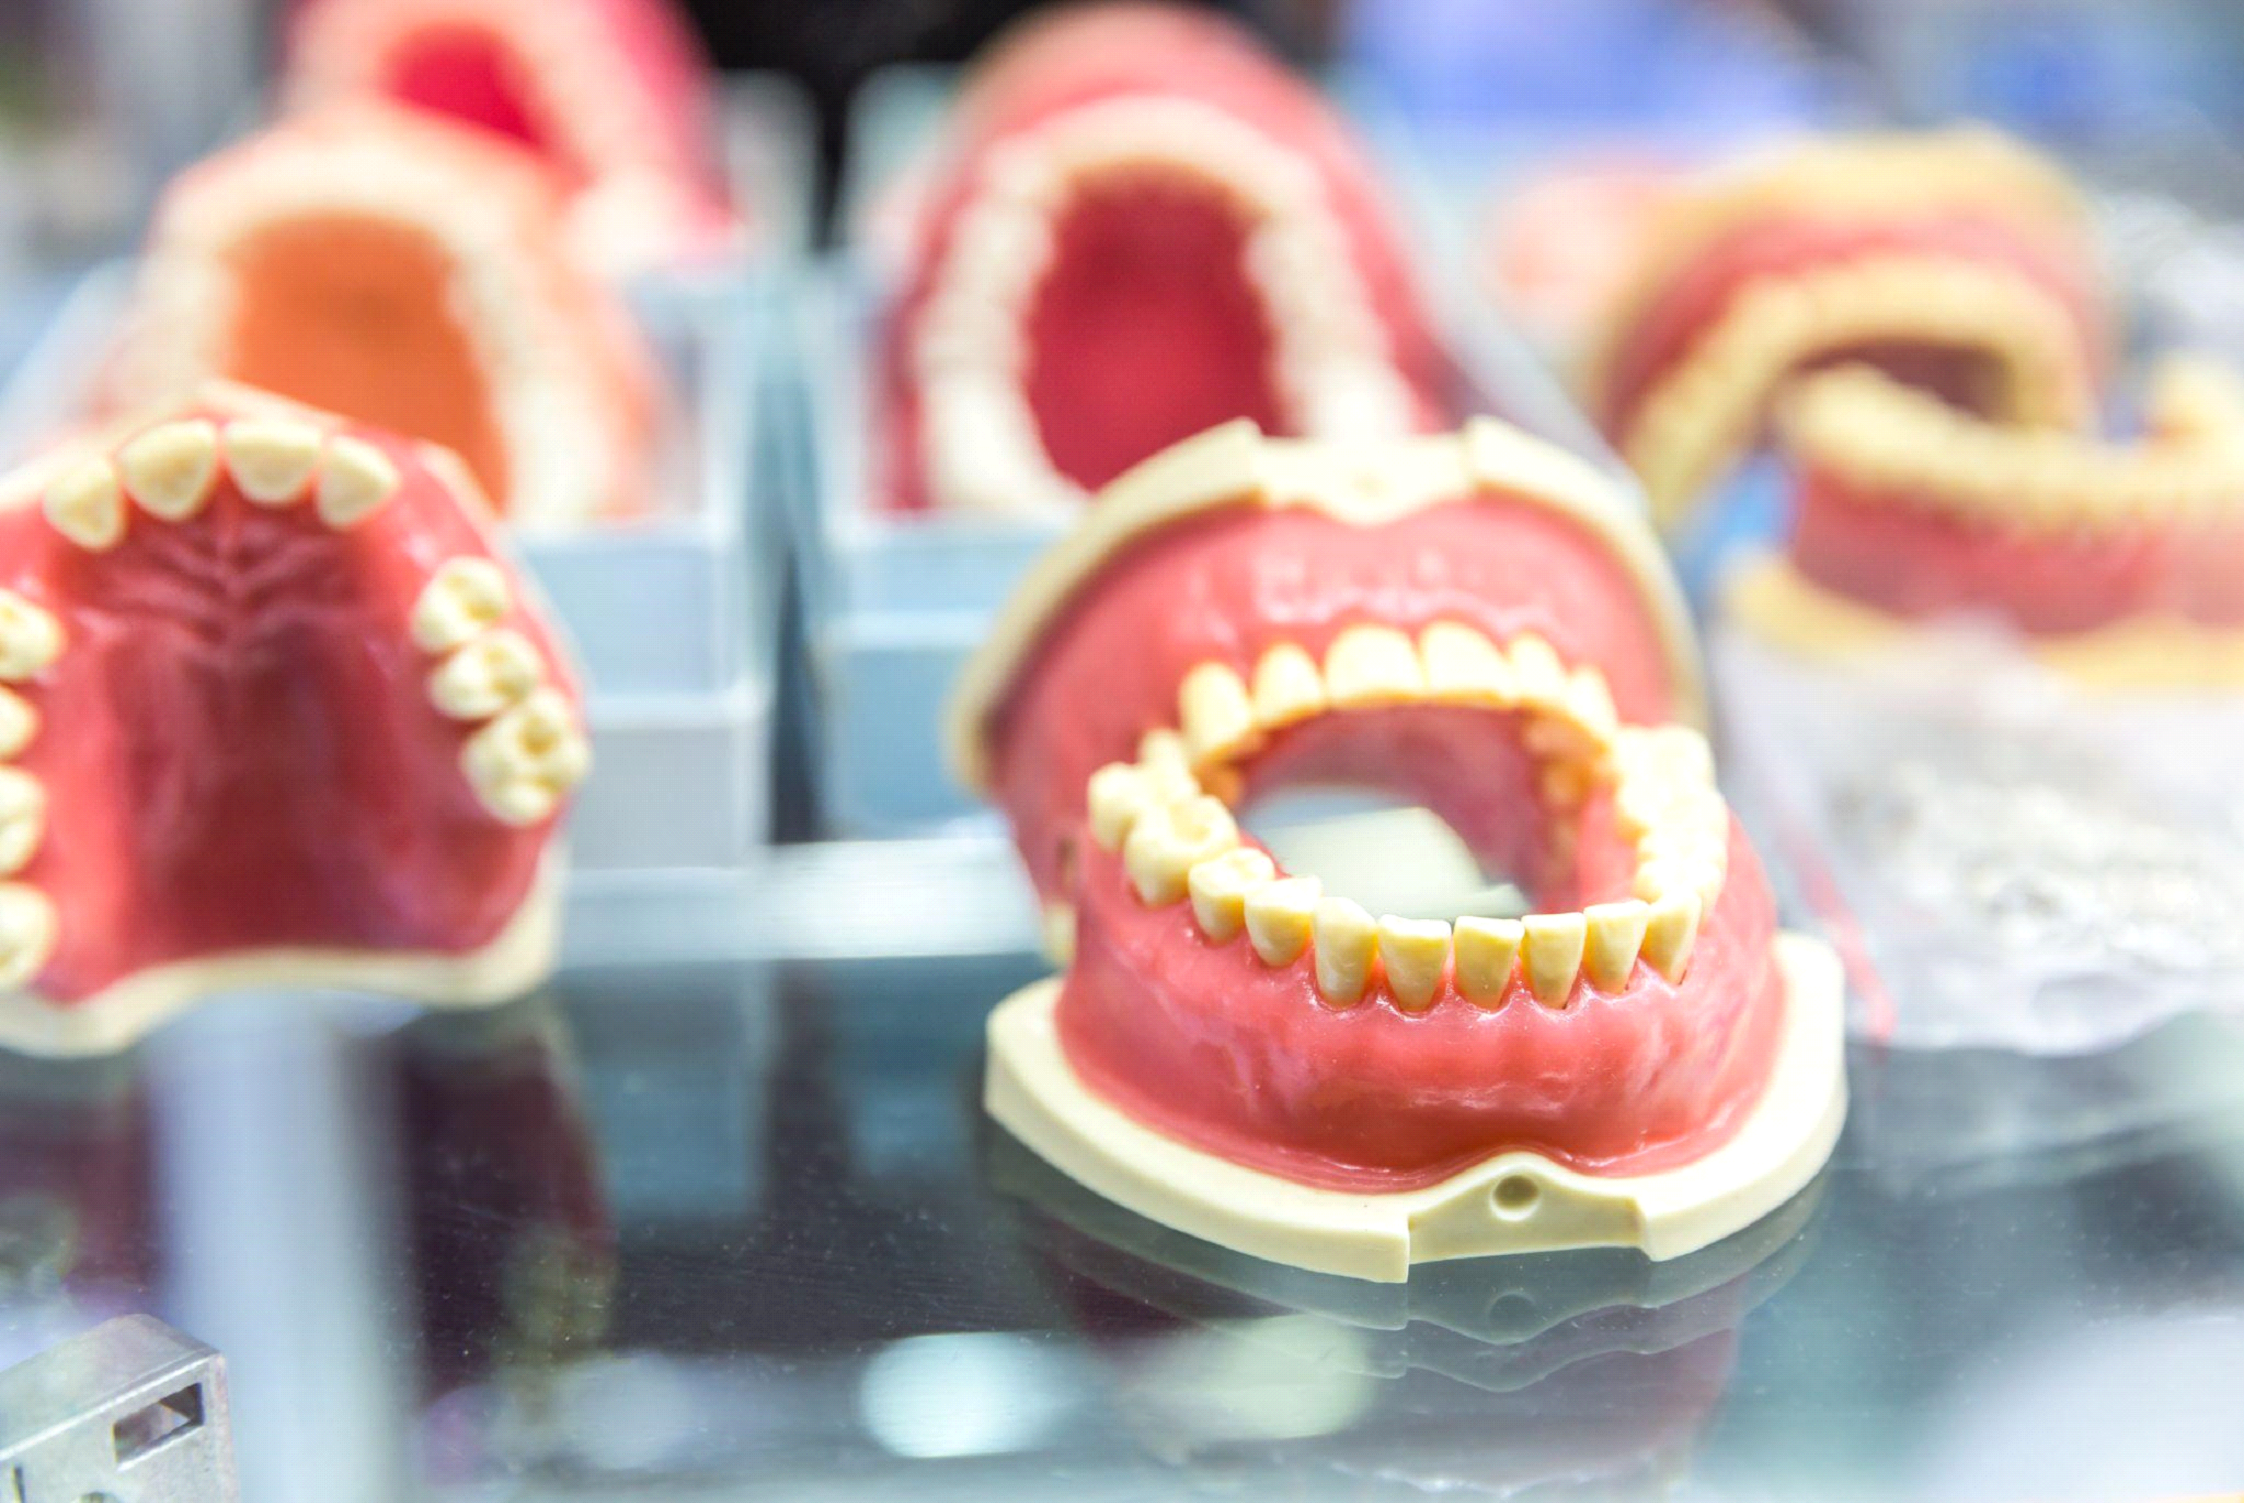 Jakie są rodzaje protez zębowych i którą z nich wybrać ?